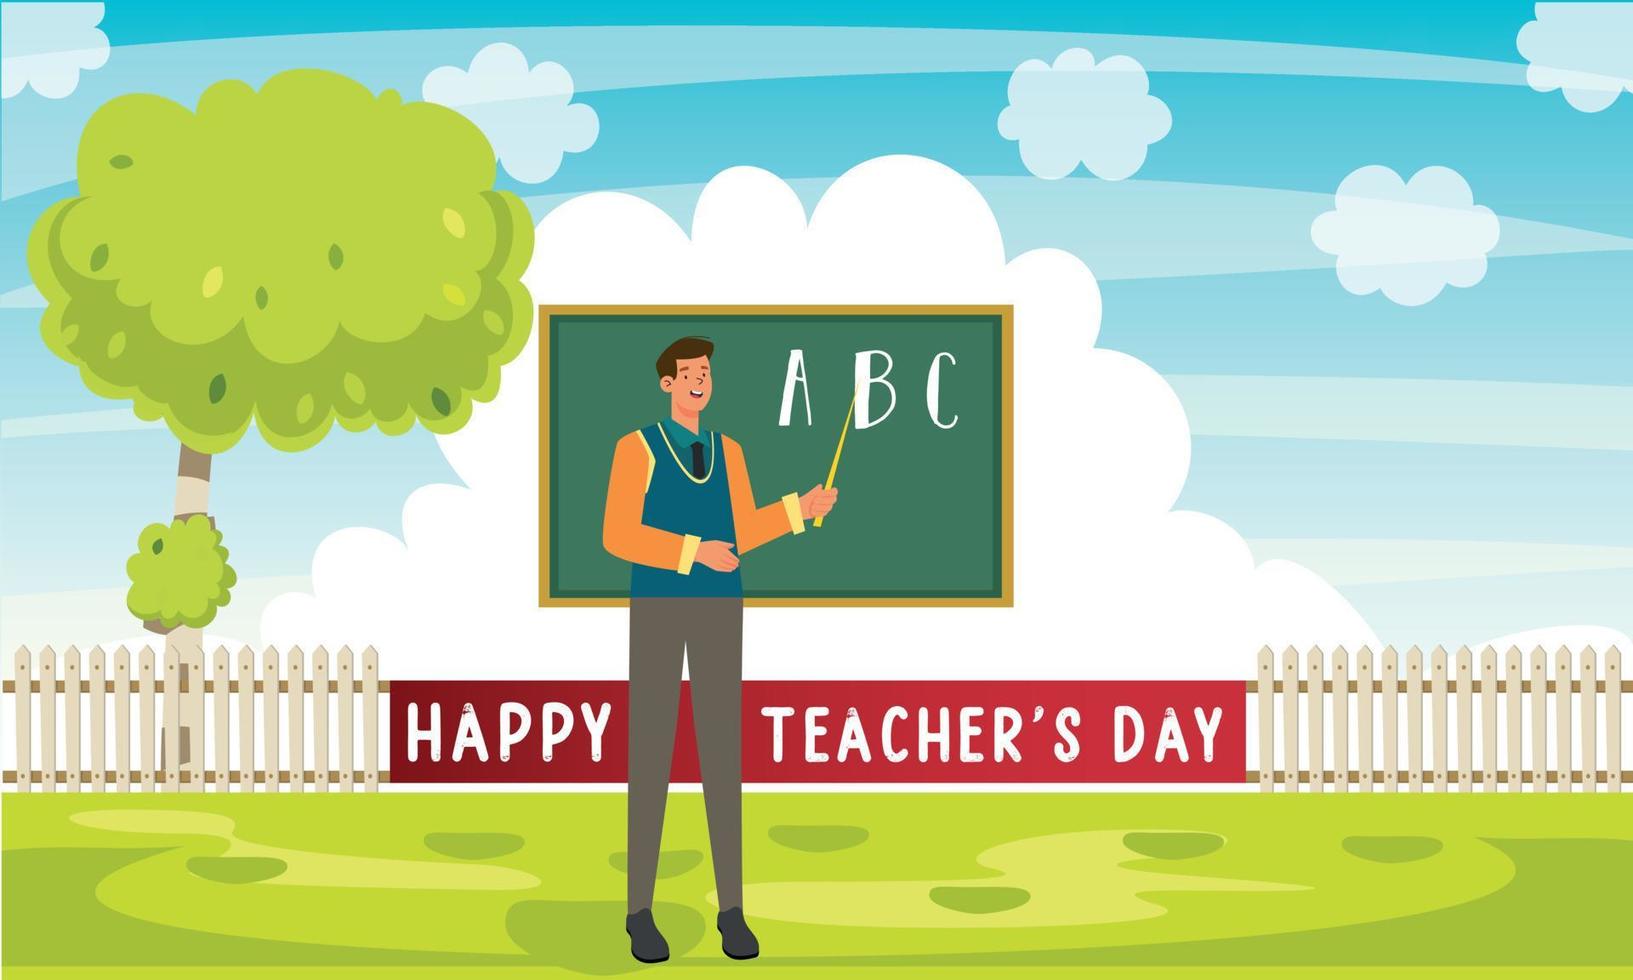 November 24 Happy teacher's day. Vector illustration.